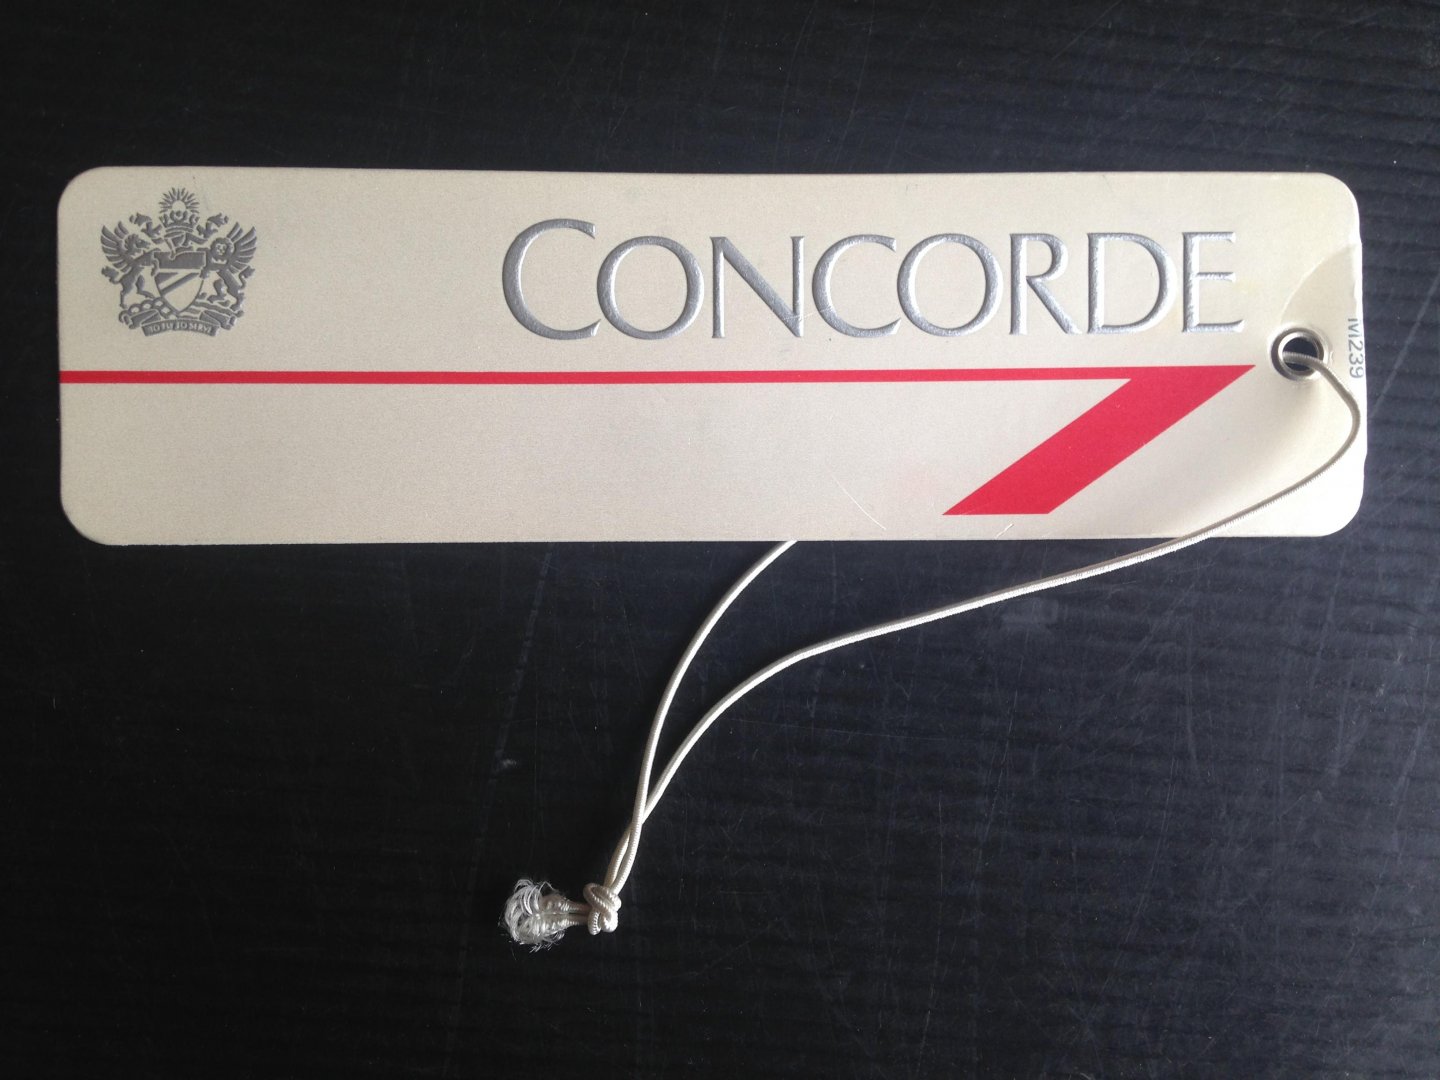  - Label van de Concorde  -  vliegtuig